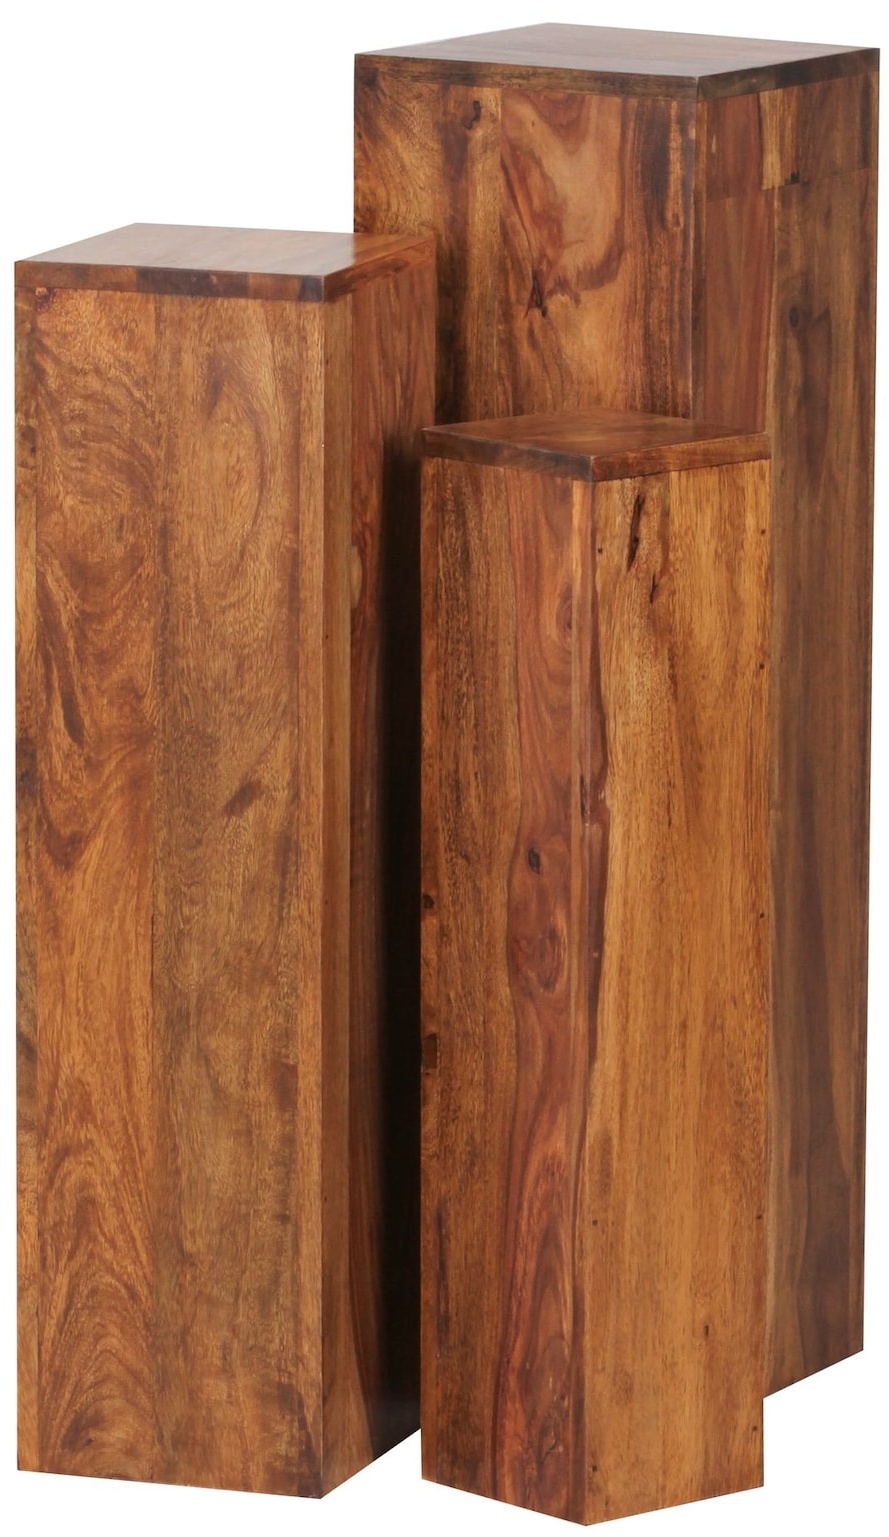 KADIMA DESIGN Beistelltisch-Sets Massivholz: 3-teilig, einzigartige Maserung, ineinander verstaubar